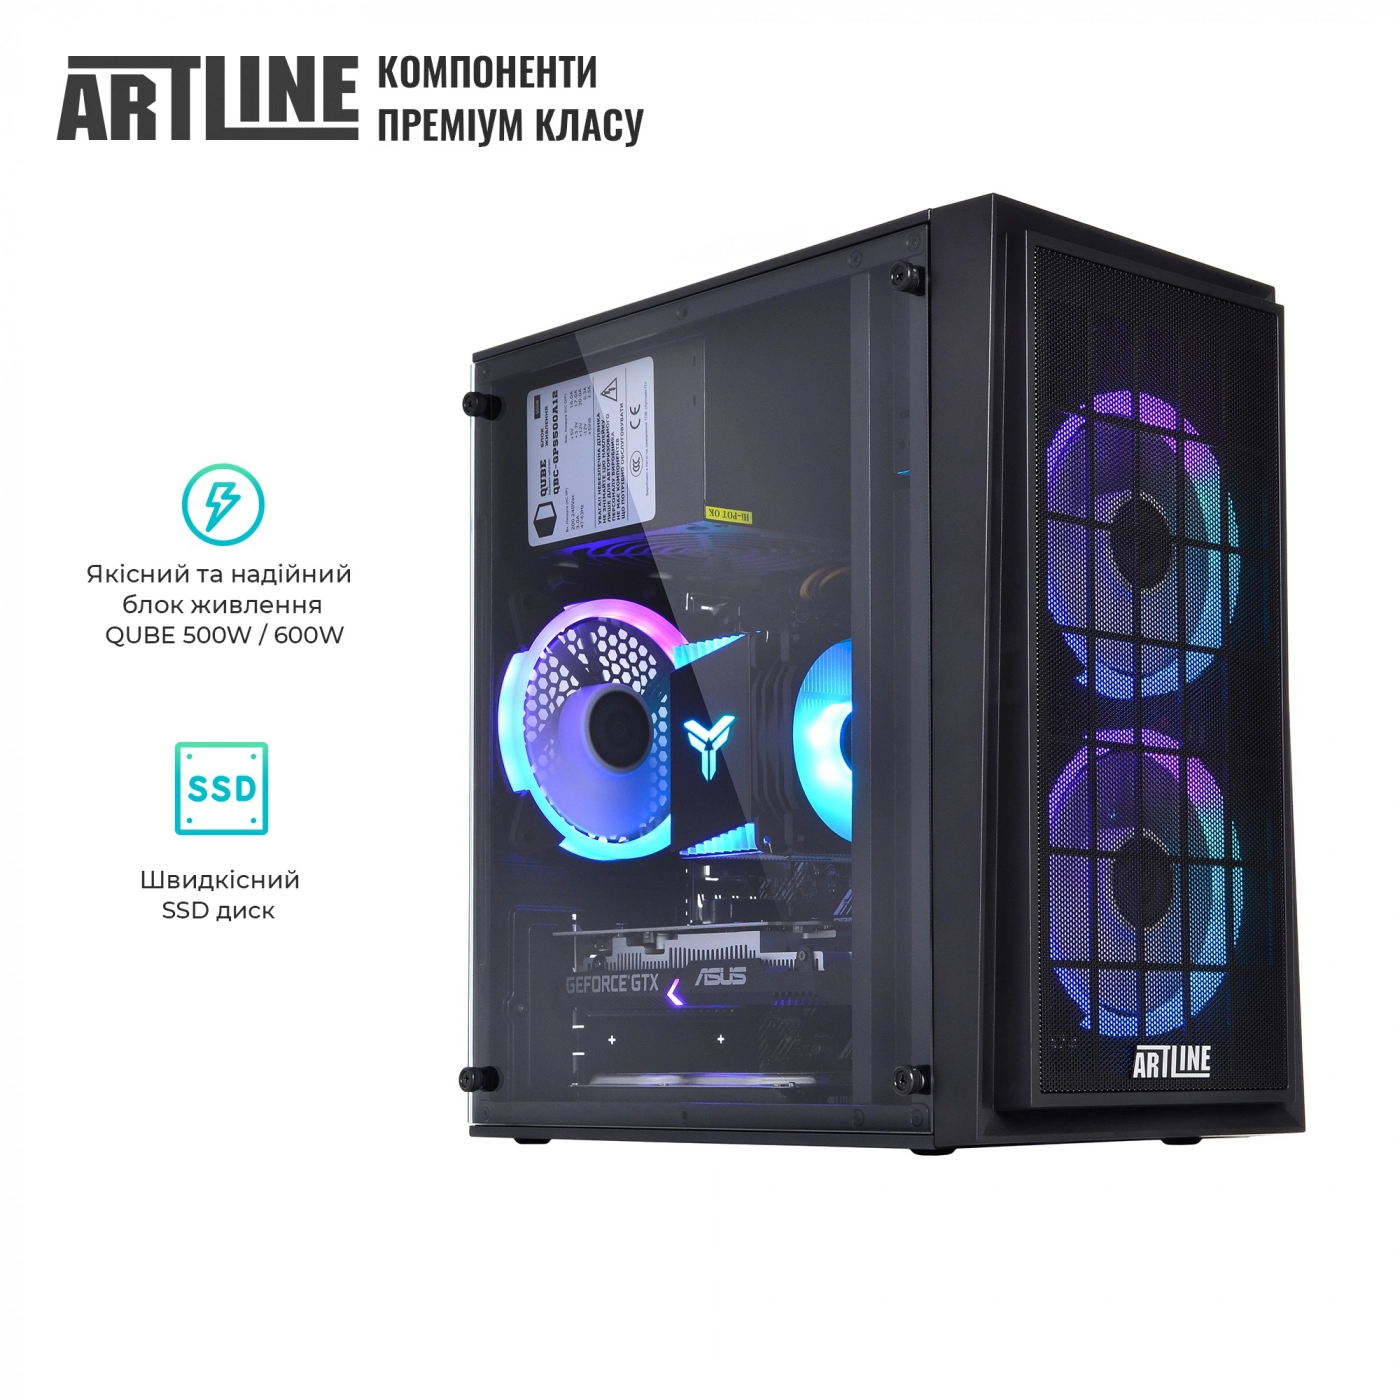 Купить Компьютер ARTLINE Gaming X43v25 - фото 8